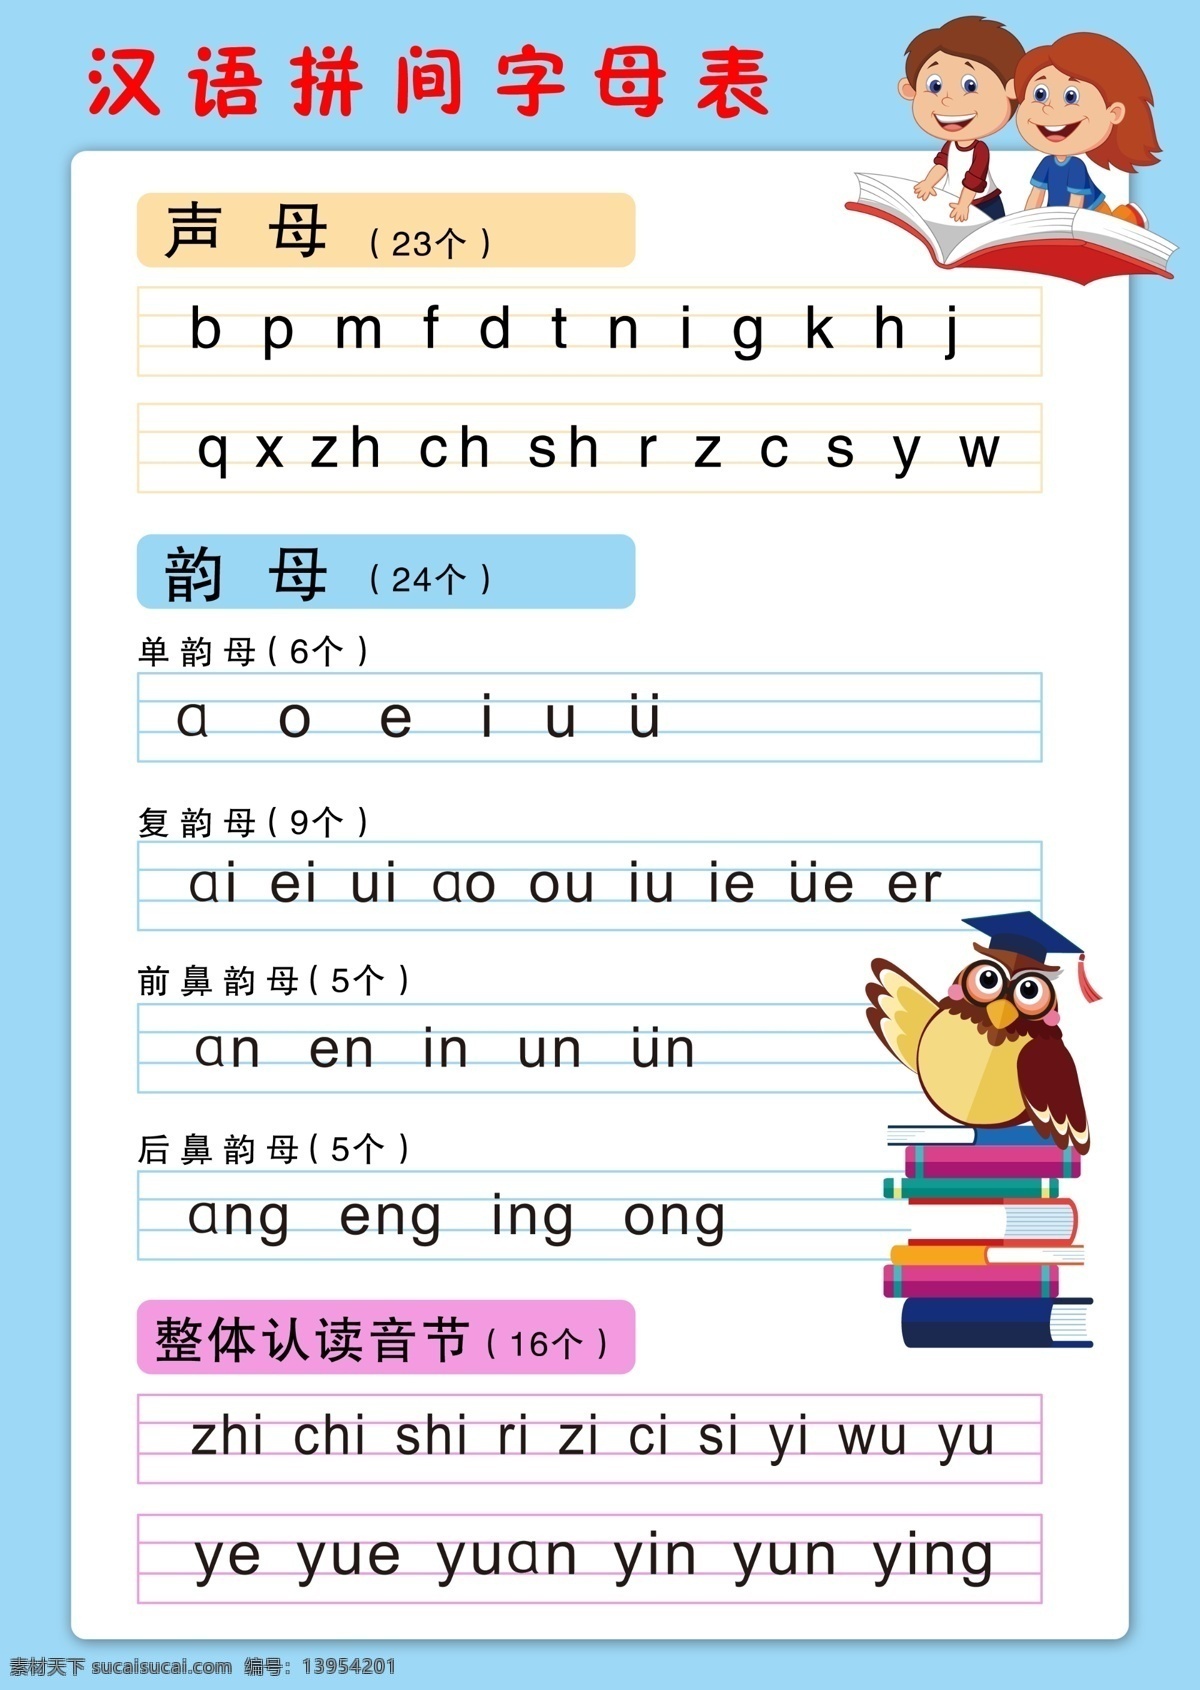 汉语 拼 间 字母表 汉语拼音 声母 拼音 韵母 复韵母 整体认读音节 整体认读 字母 生活百科